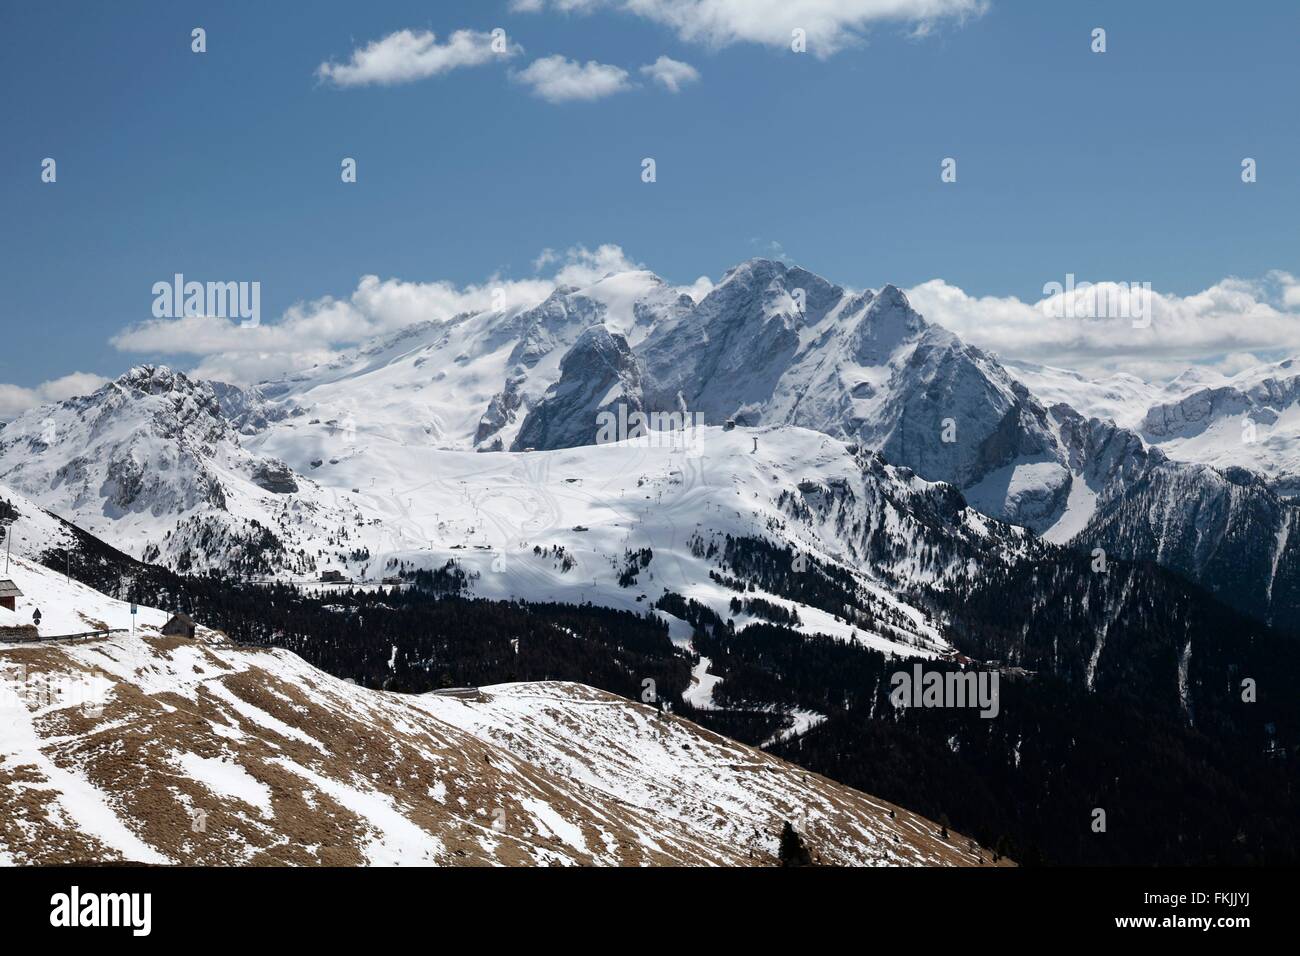 La Dolomite viste dal Passo Sella. La sella è un 2240m italiano alto valico alpino delle Dolomiti. Il Passo Sella è situato a circa 33 km da Bolzano. Passo Sella, Trentino Alto Adige, Alto Adige, Italia, Europa Data: 17 Aprile 2012 Foto Stock